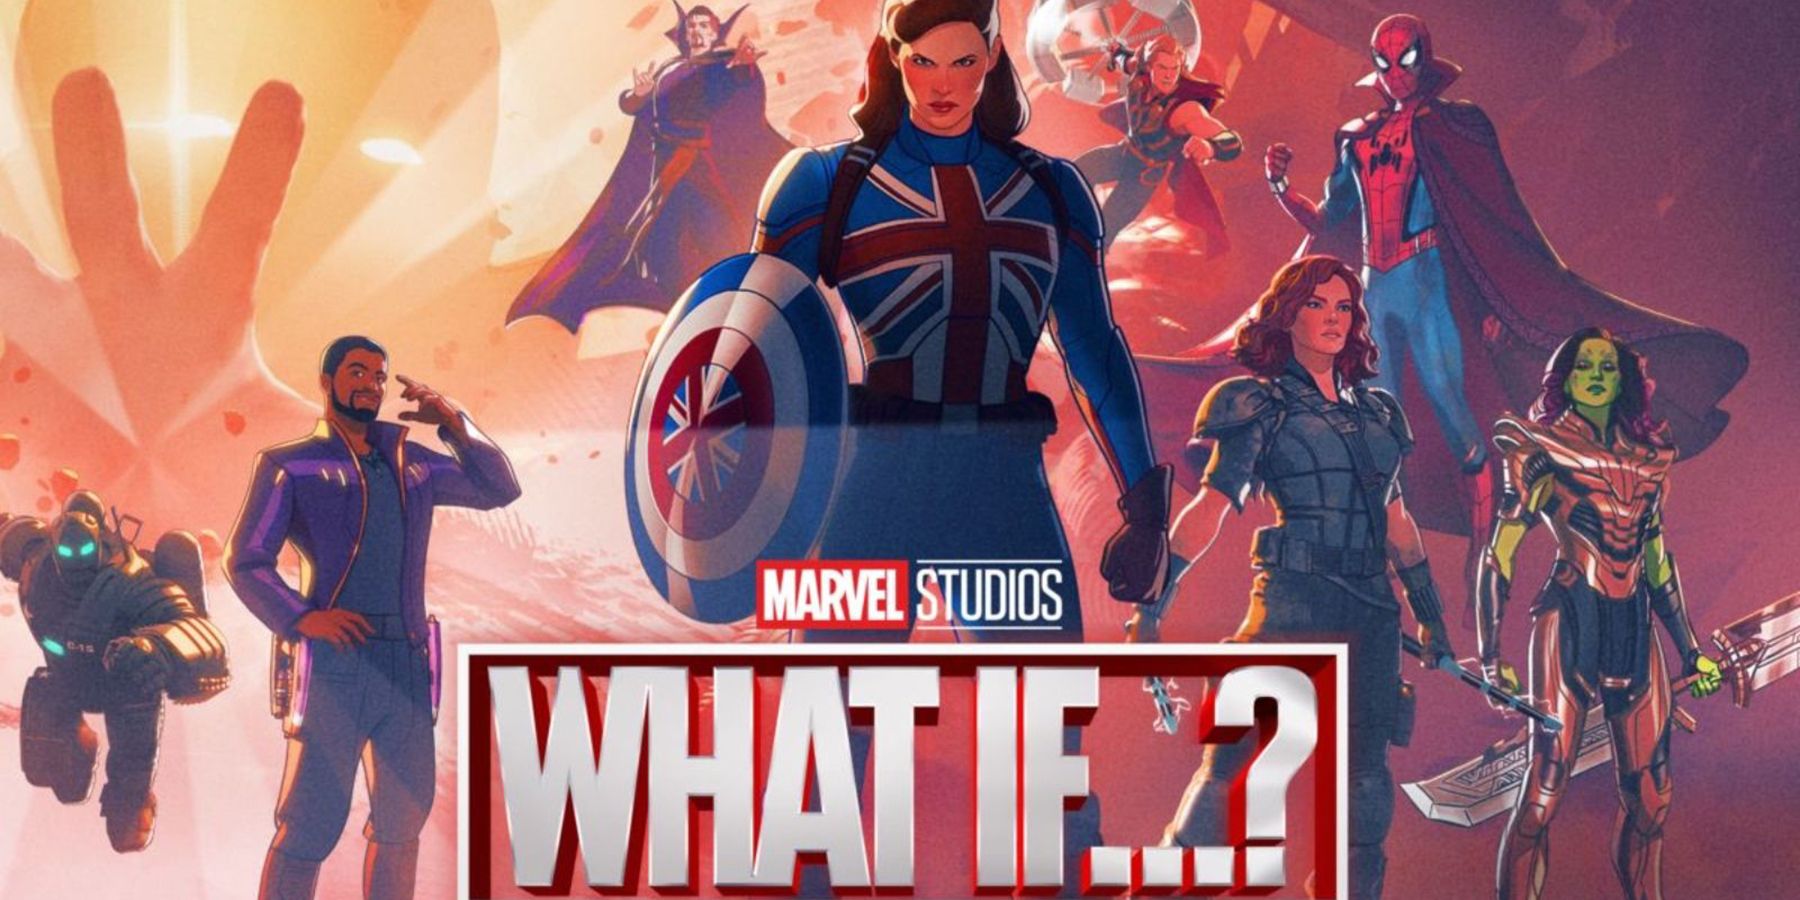 ¿Qué pasaría si …? De Marvel Studios Los episodios eran más largos antes de COVID-19